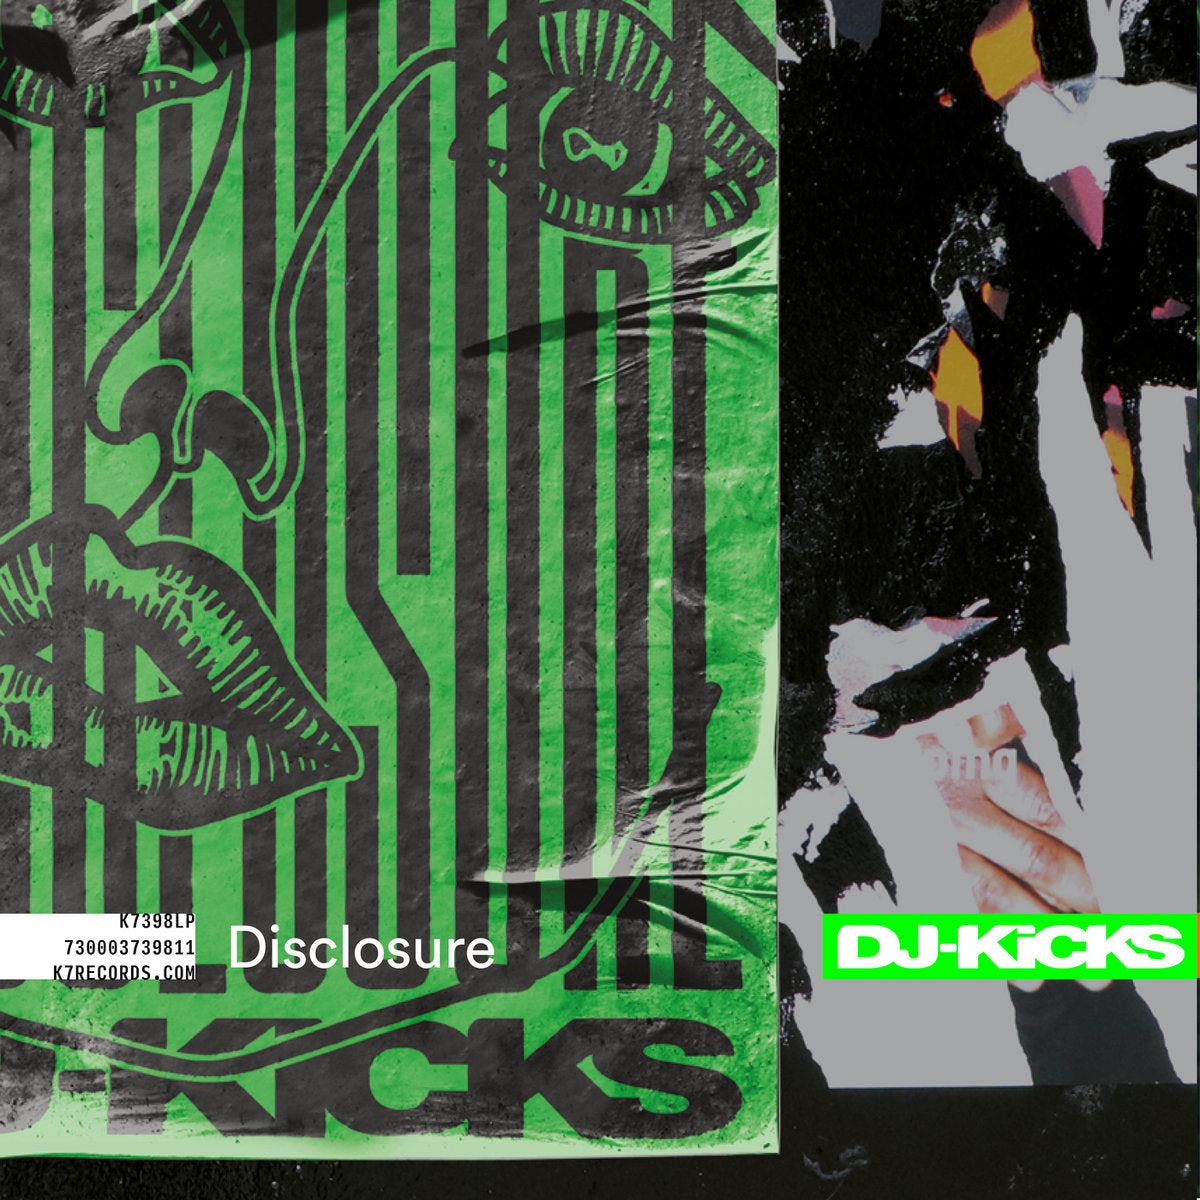 DJ-Kicks: Disclosure (New 2LP)